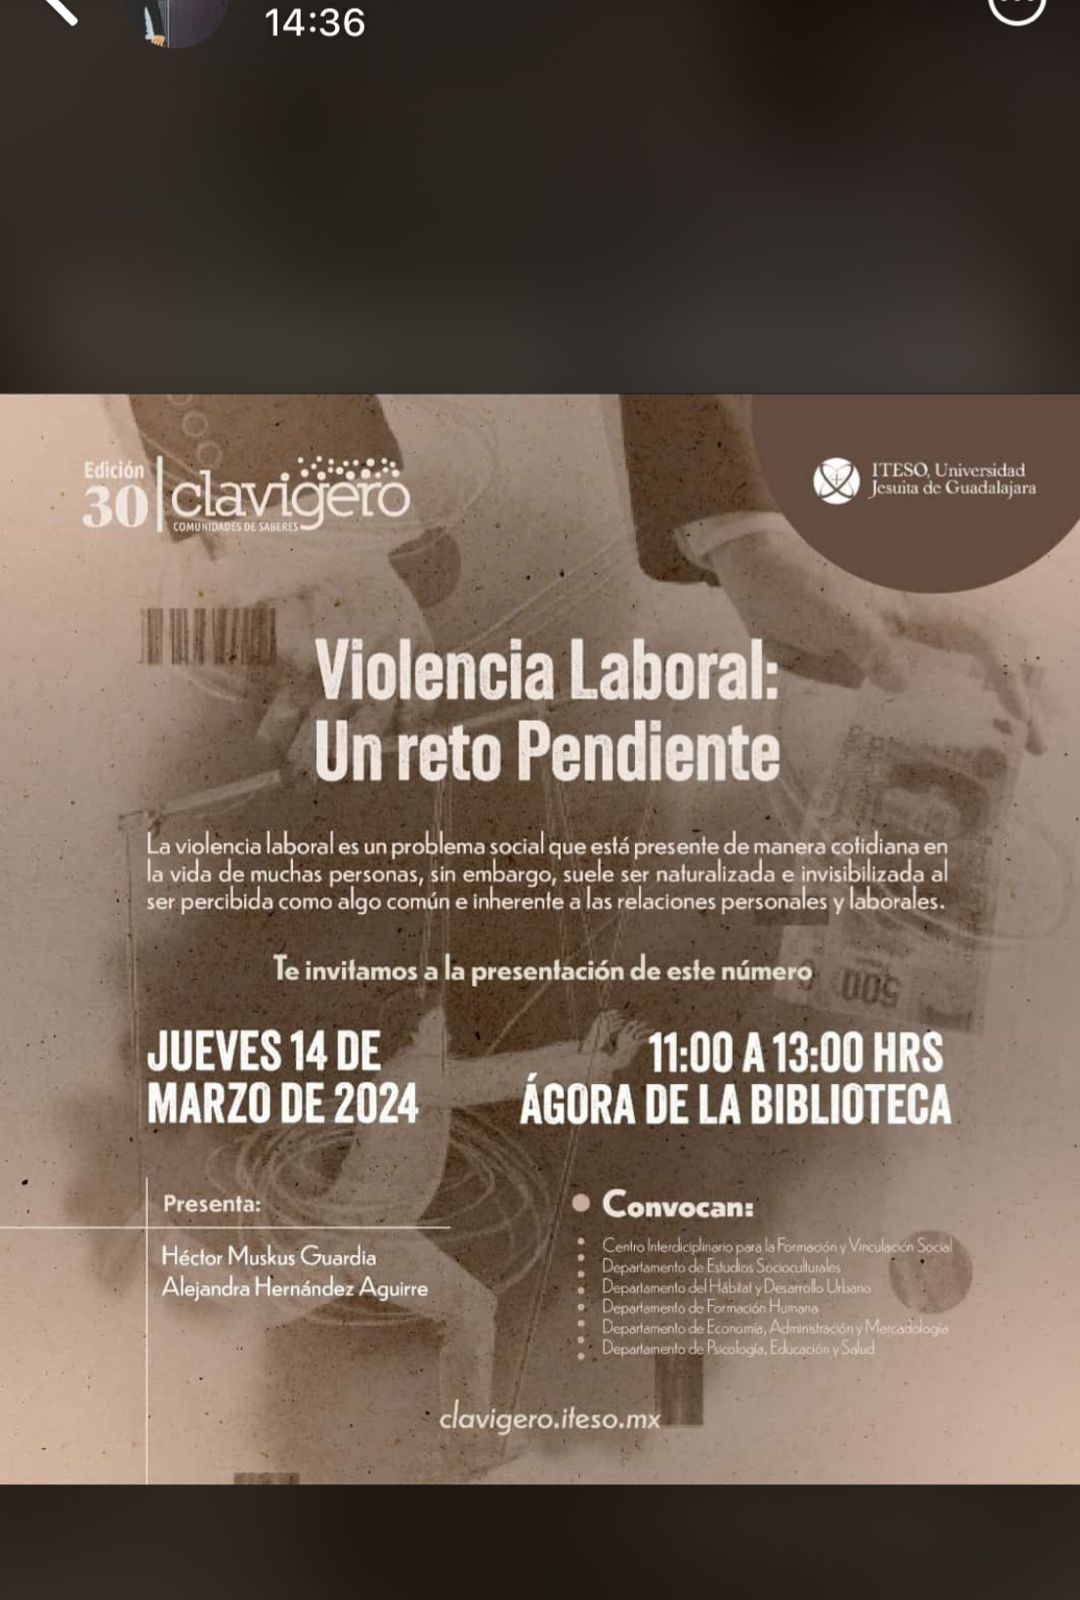 Imagen que muestra la publicidad para una charla de violencia laboral realizada por Héctor Muskus en el ITESO